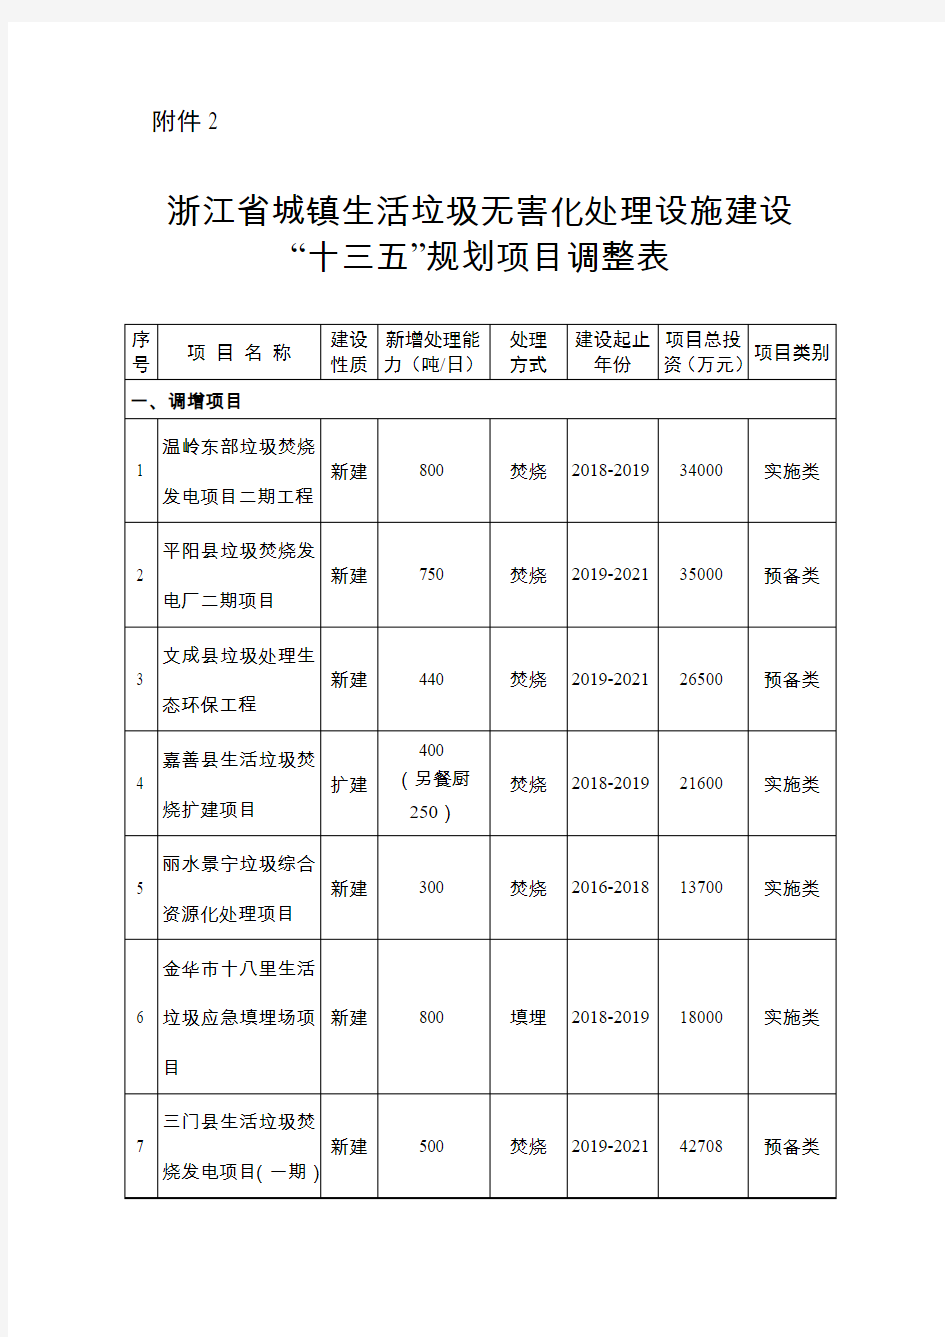 浙江省城镇生活垃圾无害化处理设施建设“十三五”规划项目调整表